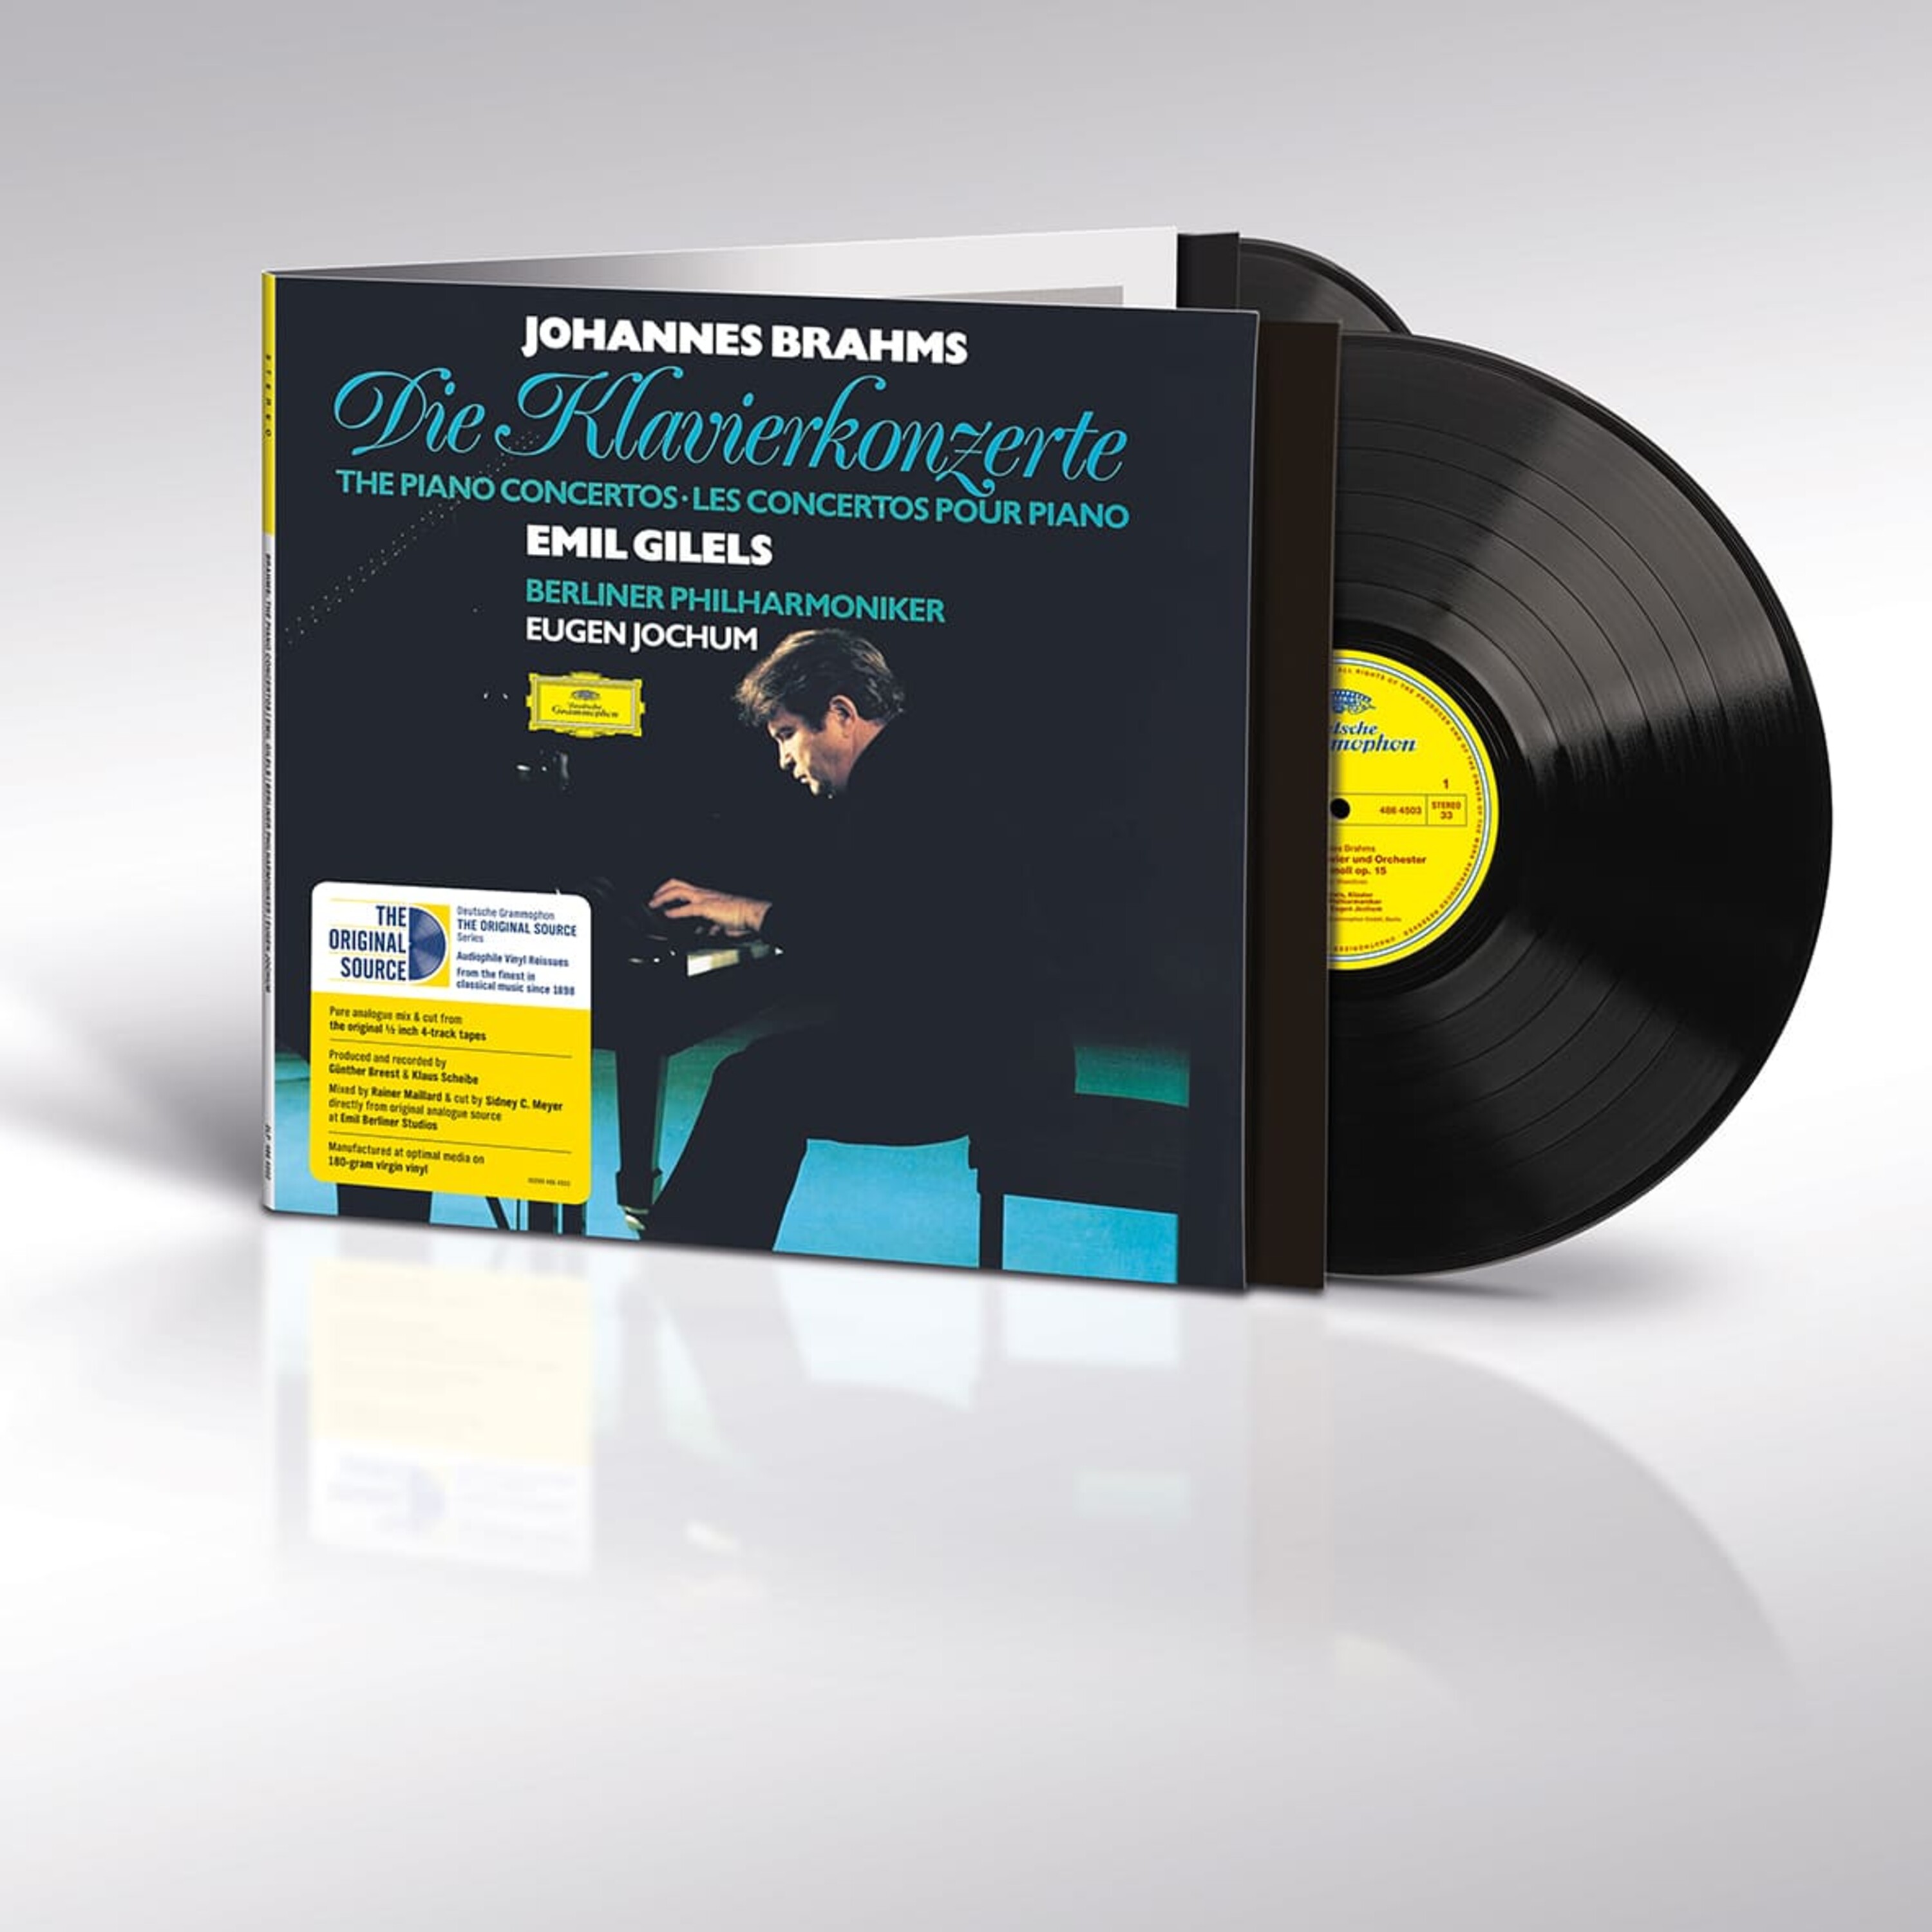 Rewriting History: Deutsche Grammophon's Groundbreaking “Original Source”  Vinyl Reviewed